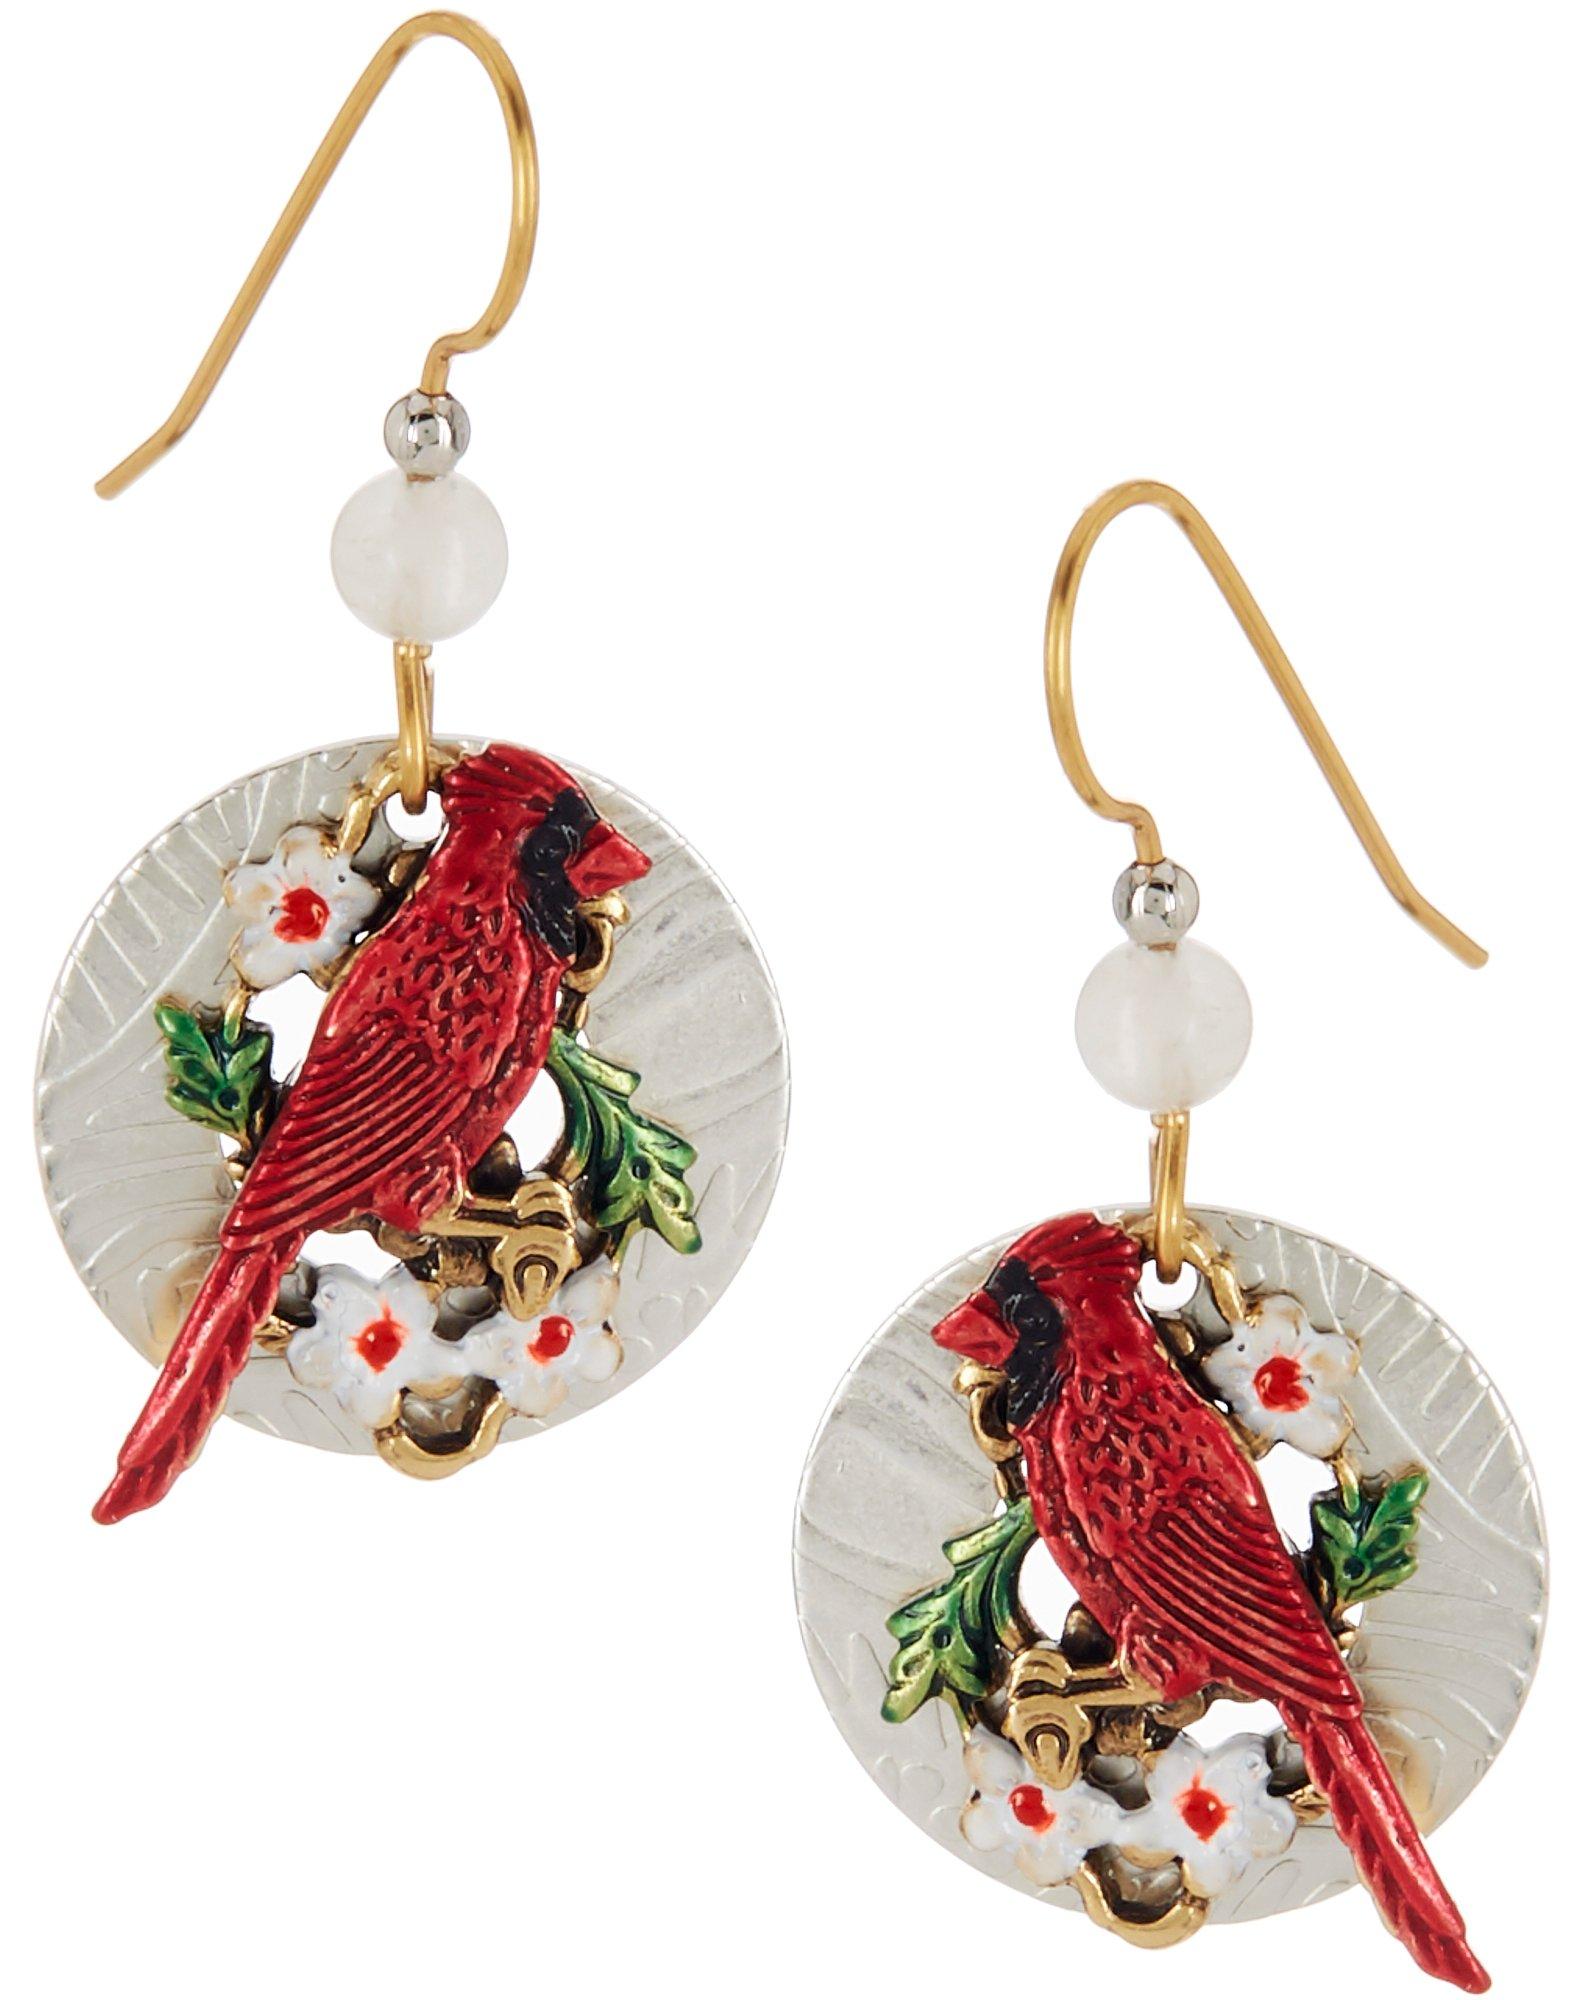 Silver Forest Cardinal Dangle Earrings